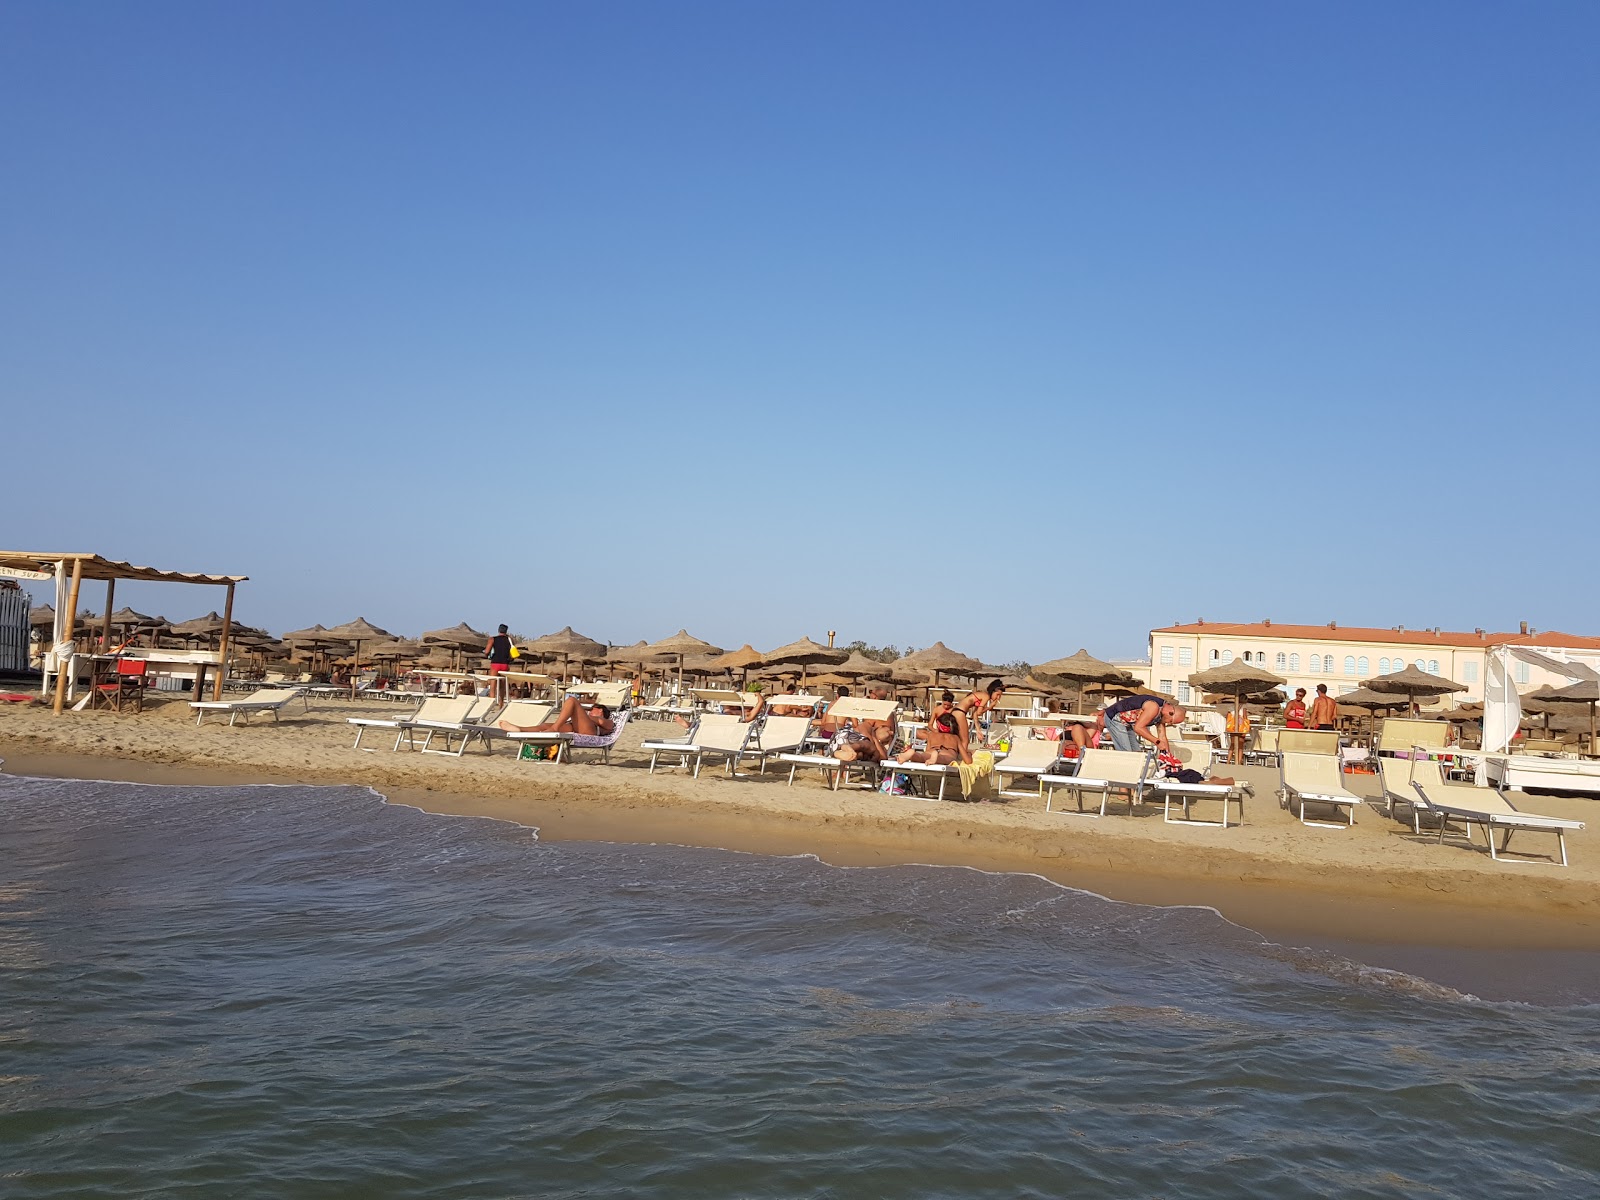 Spiaggia Libera Tirrenia的照片 和解